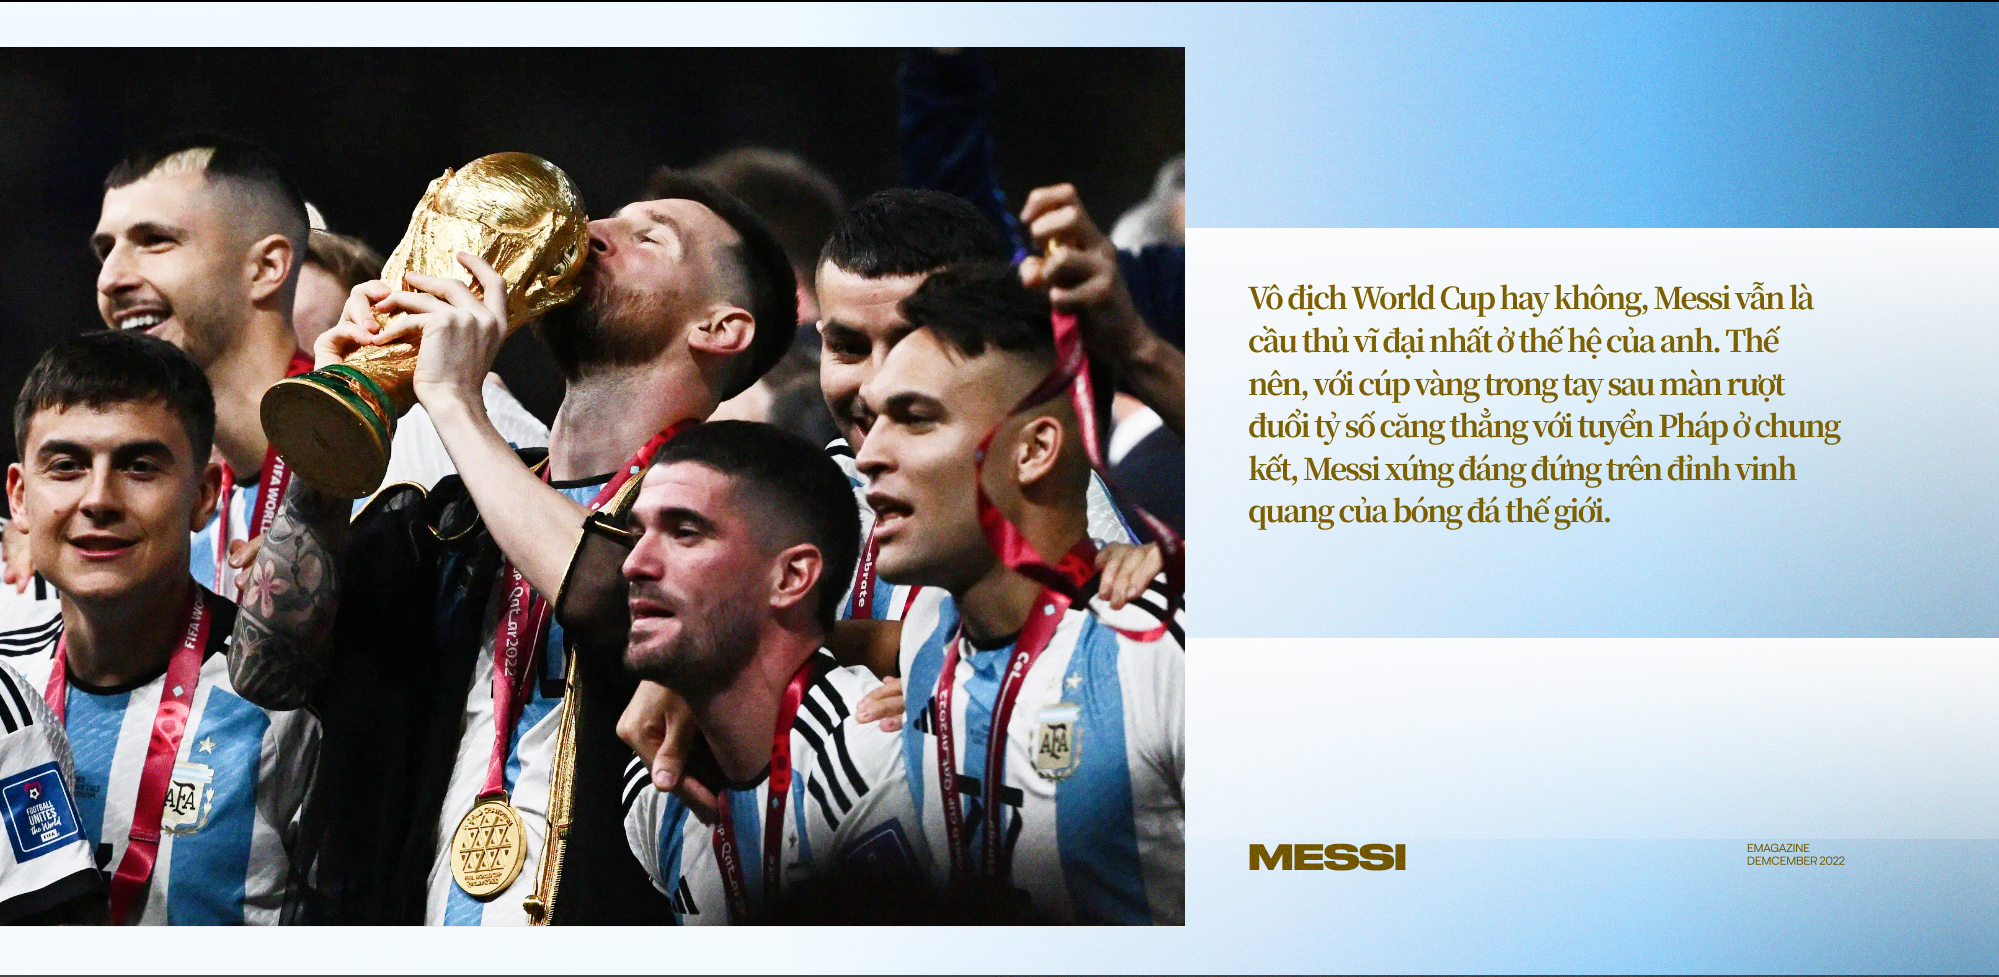 Messi: Từ đứa con thất lạc trở thành người hùng Argentina và cầu thủ vĩ đại nhất của thế hệ này! - Ảnh 6.